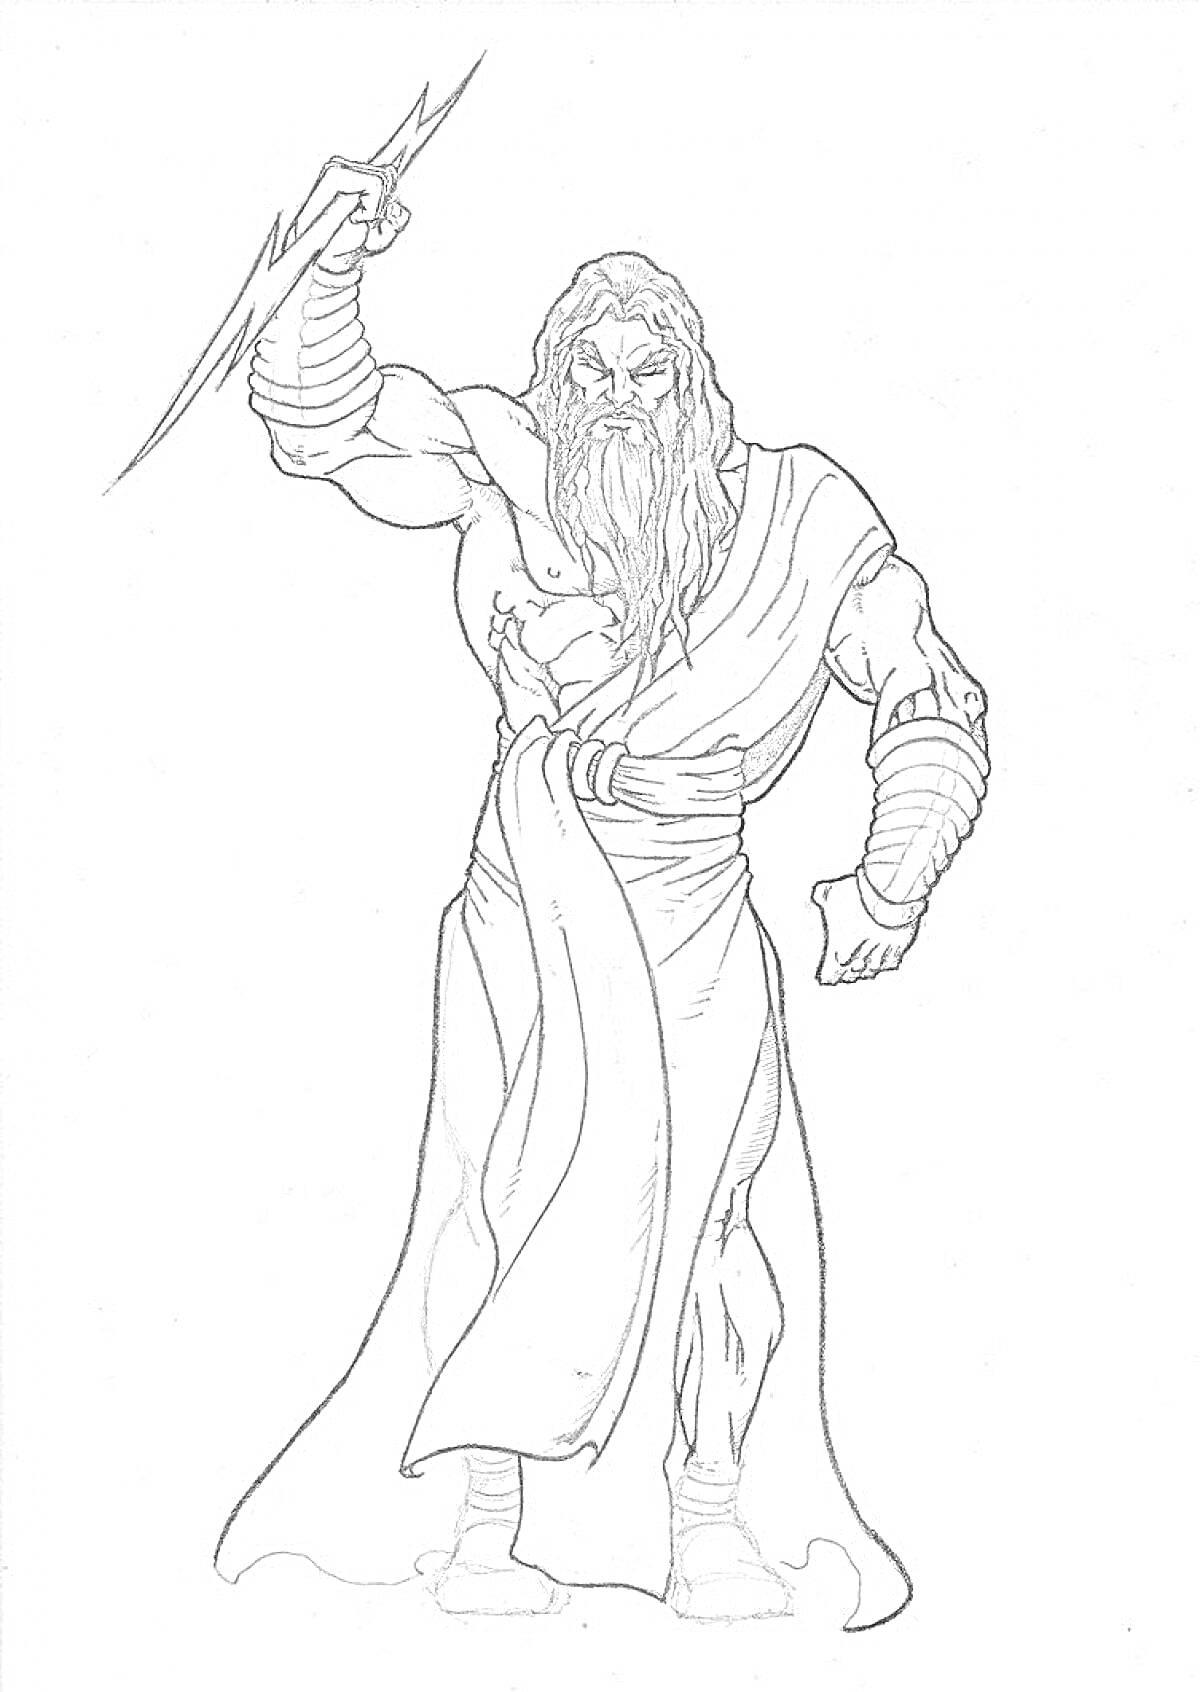 Раскраска Зевс с молнией в руке, бородатый мужчина в древнегреческом одеянии, с броней на руках